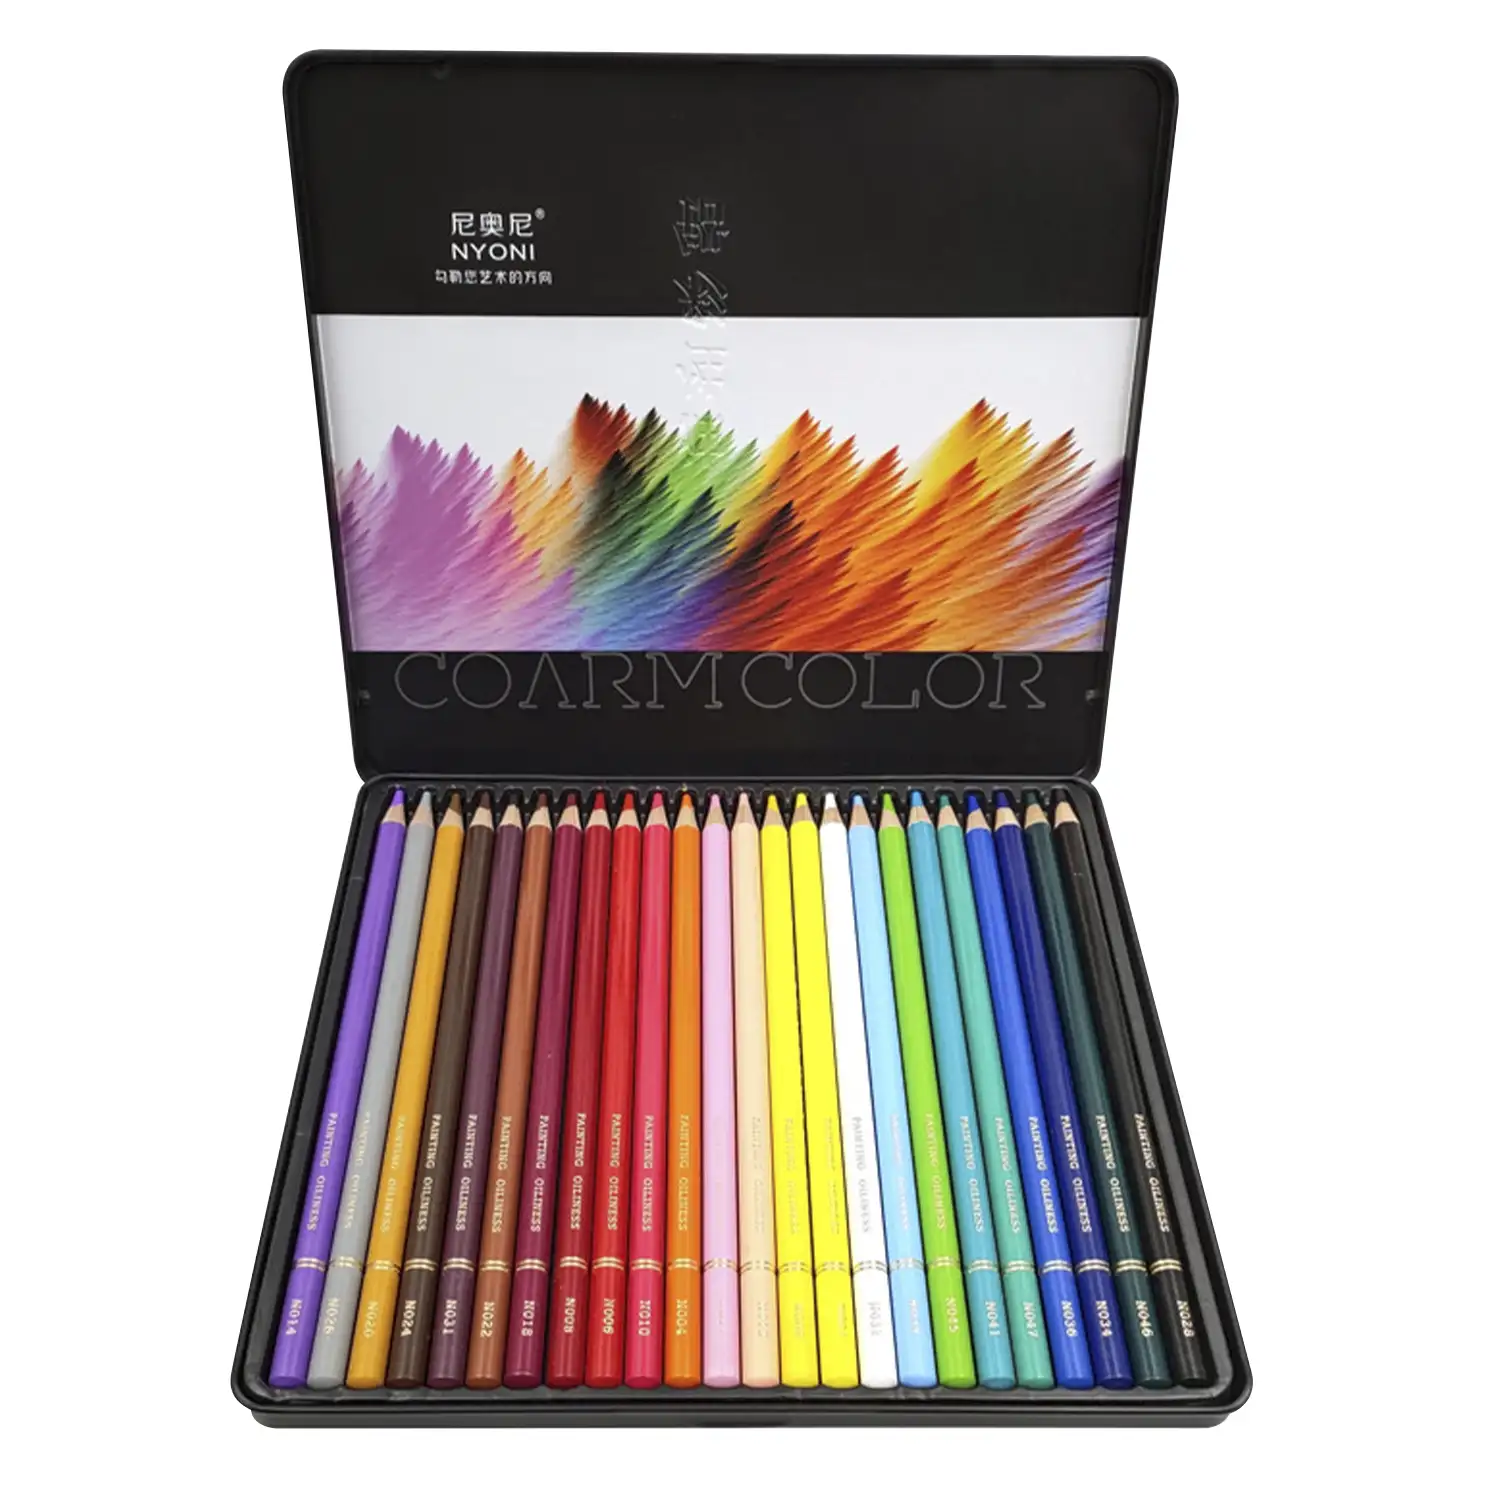 Set de 24 lápices de colores. Fabricados en madera, forma redonda profesional.